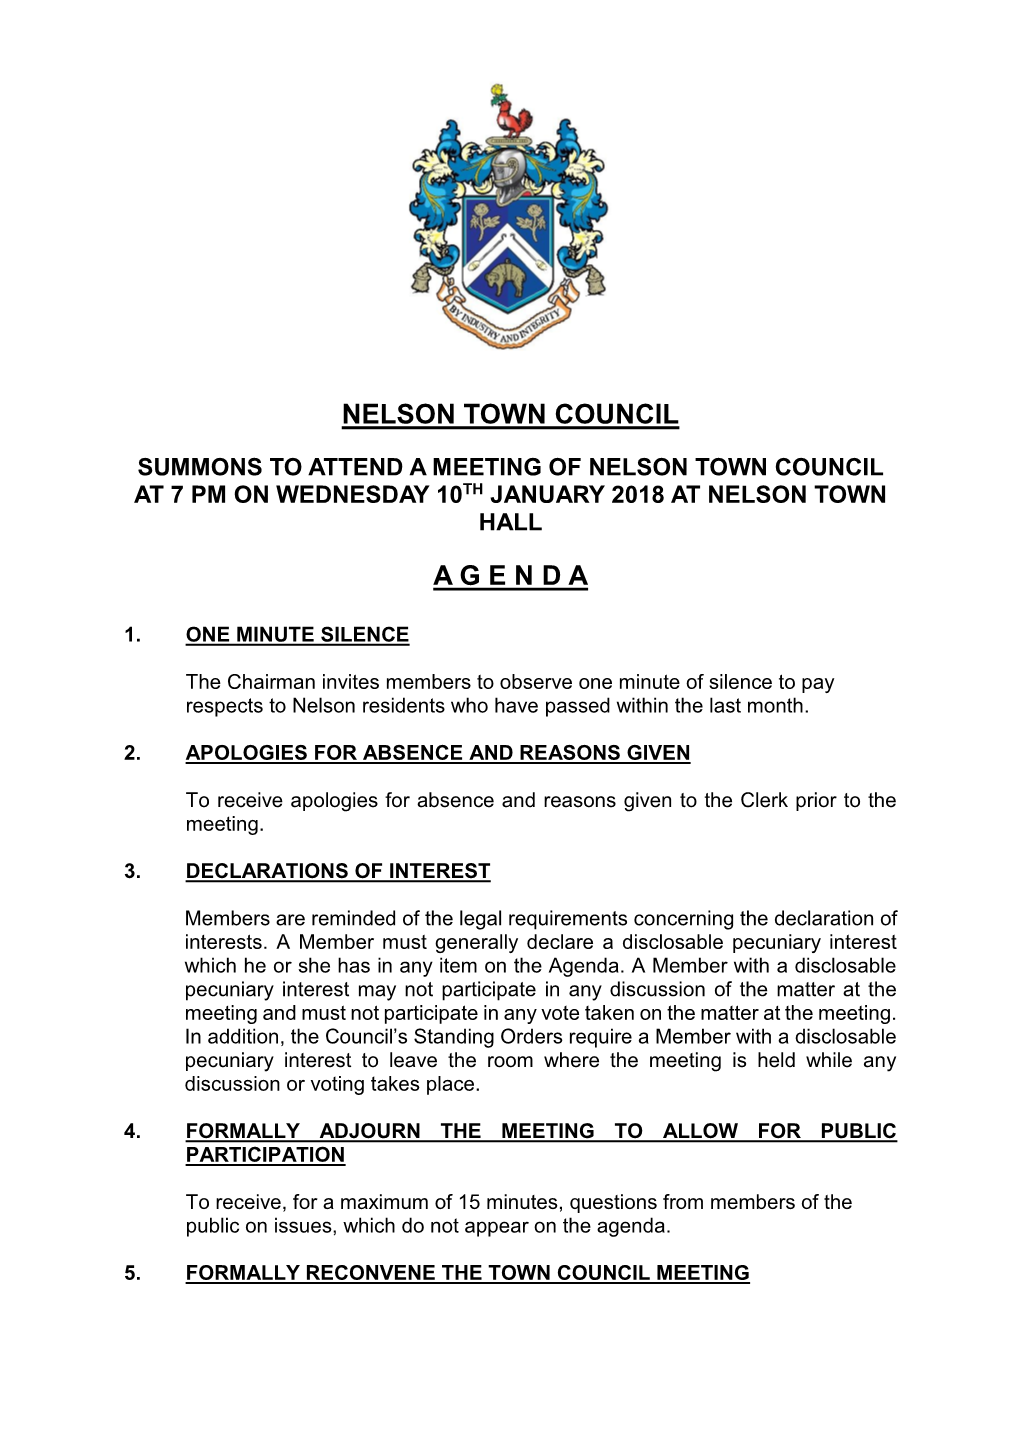 Nelson Town Council a G E N